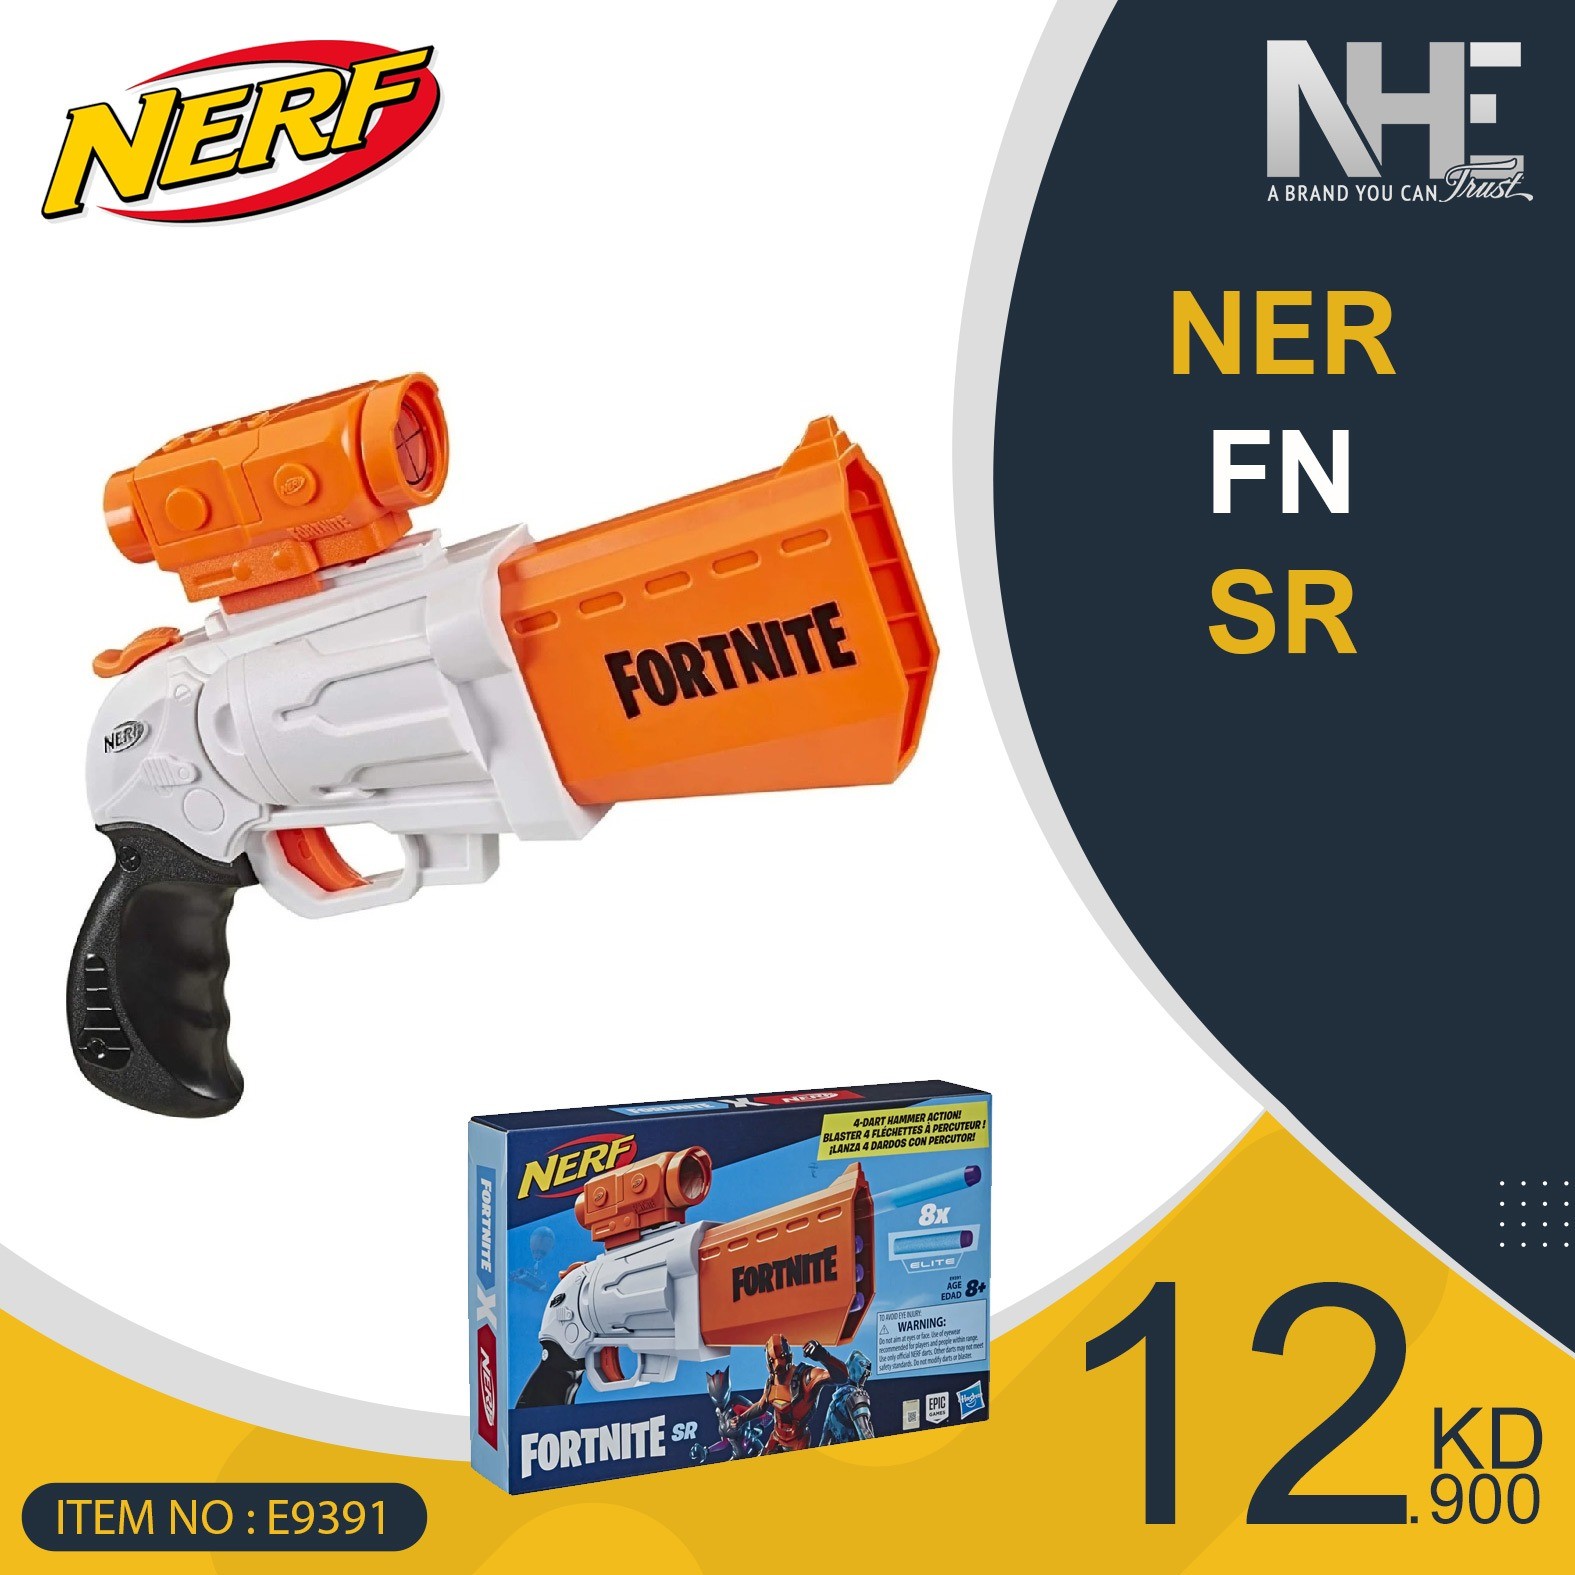  NERF Fortnite SR Blaster - 4-Dart Hammer Action